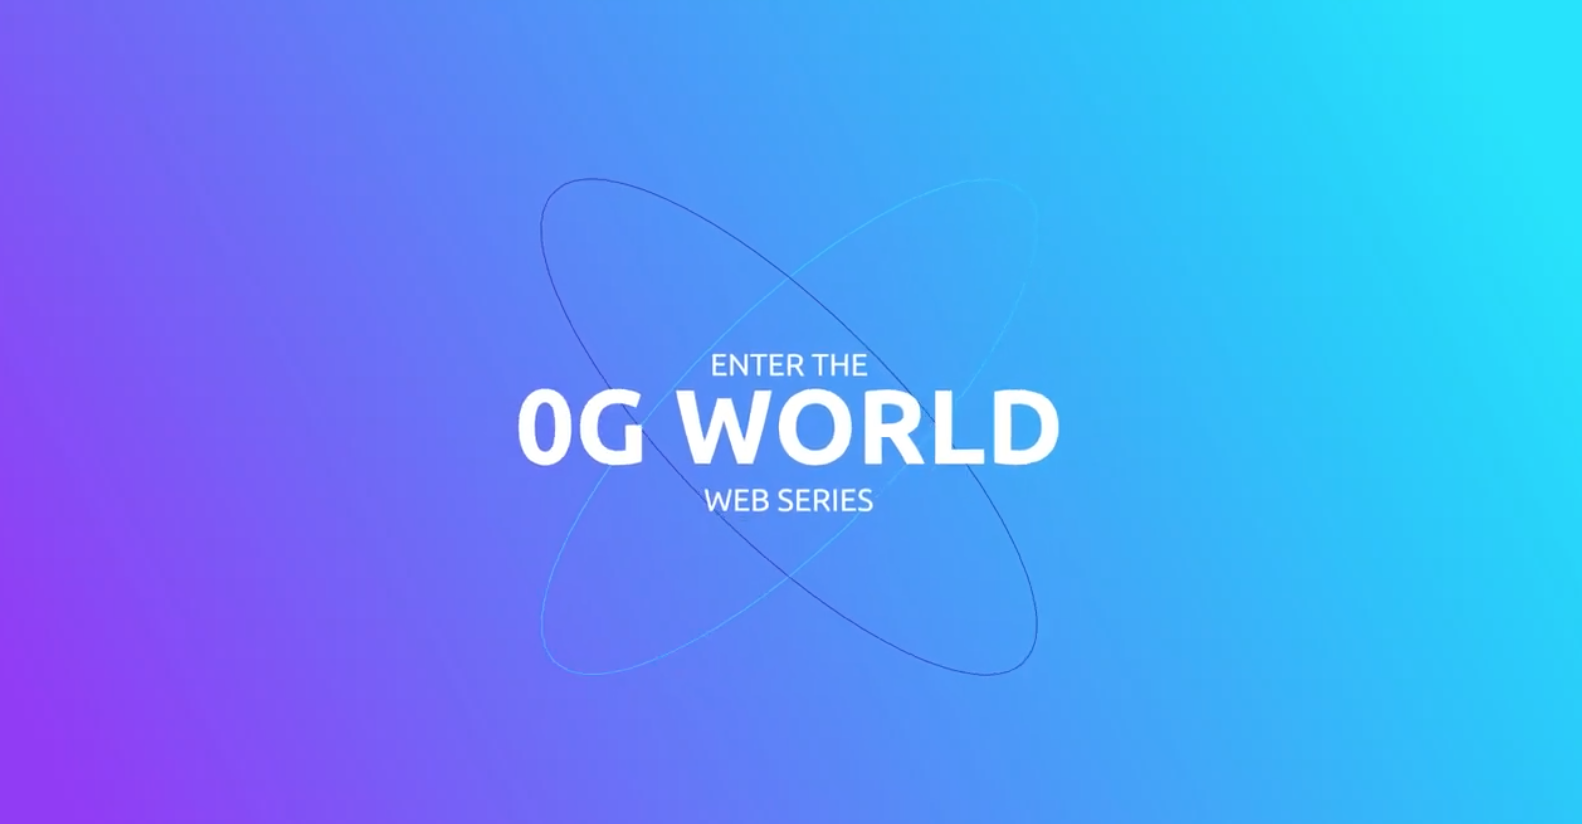 @Sigfox lanza su web serie “ENTER THE #0G WORLD”. Compartimos el teaser. Estreno: 27 de marzo